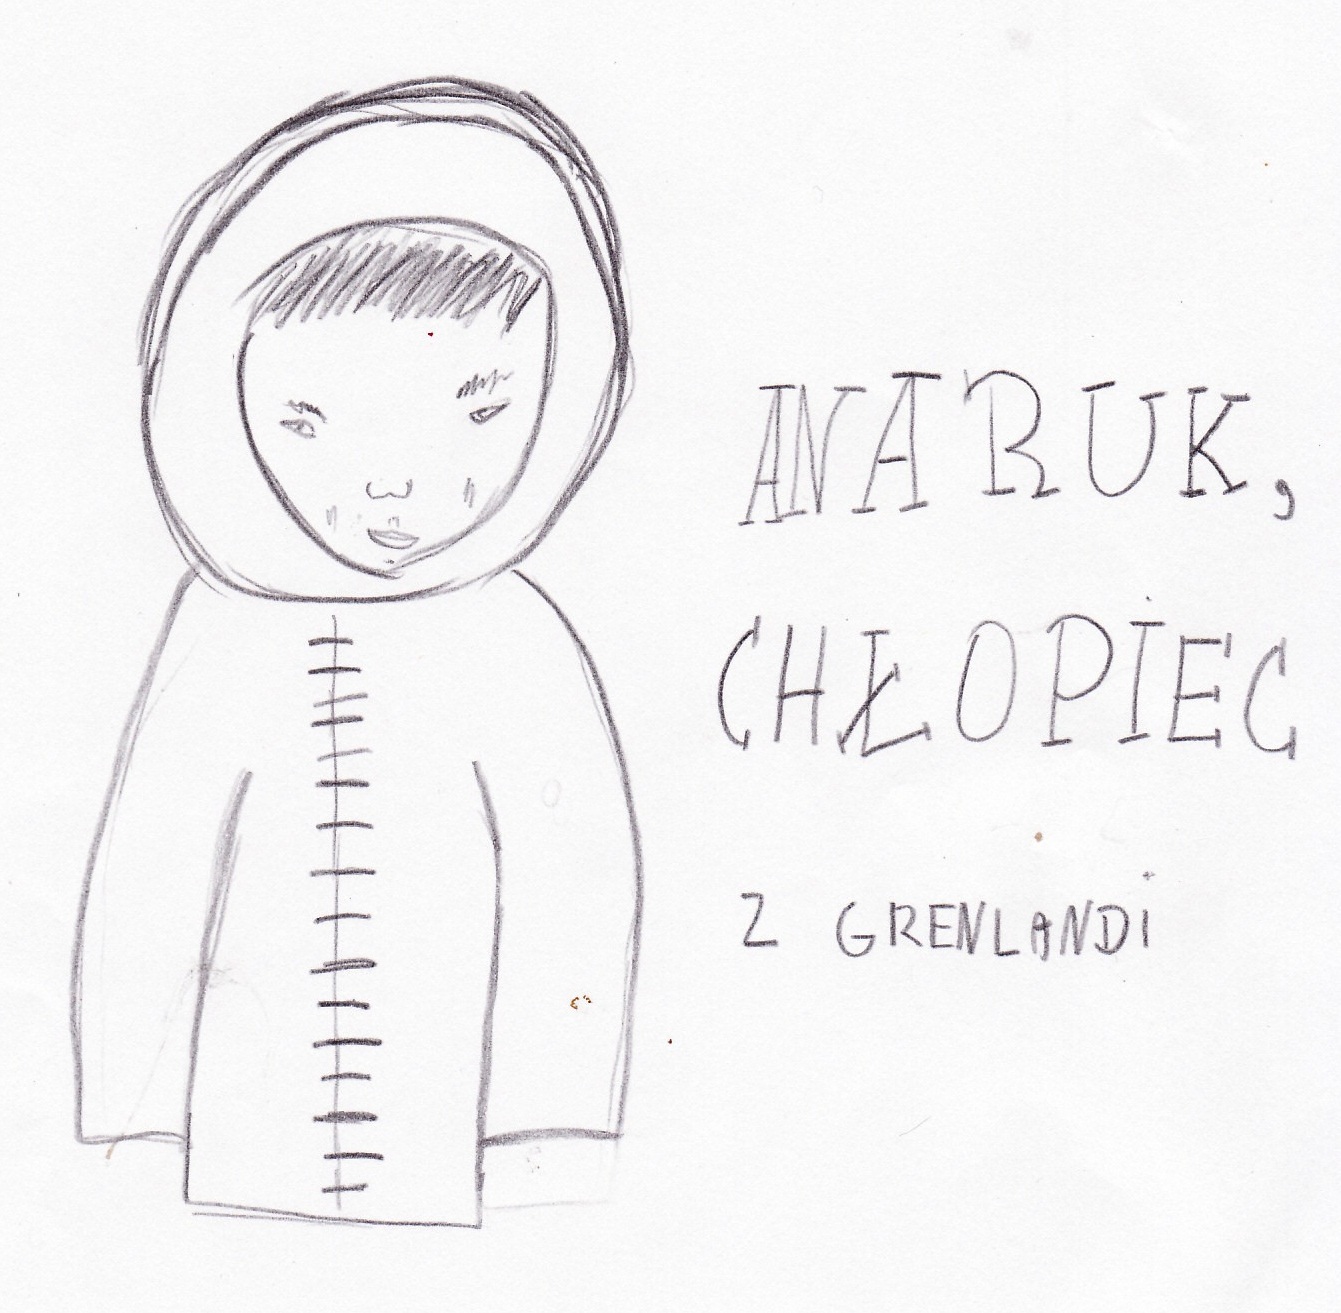 O czym piszą dzieci?: Anaruk, chłopiec z Grenlandii - Anaruk Chłopiec Z Grenlandii Kolorowanka